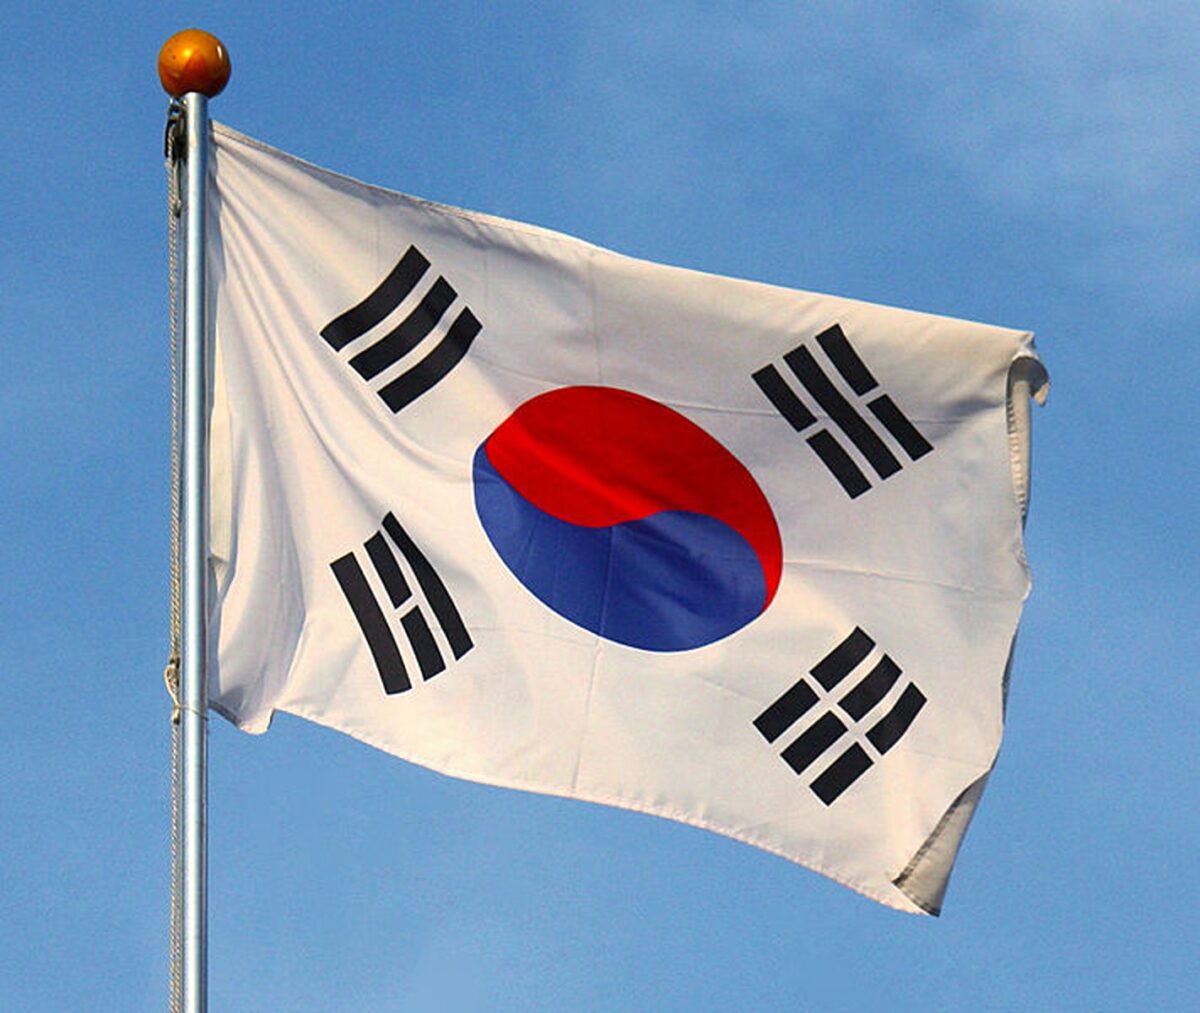 Coreea de Sud ripostează cu cântece K-pop după ce a fost lovită de baloane pline cu gunoaie